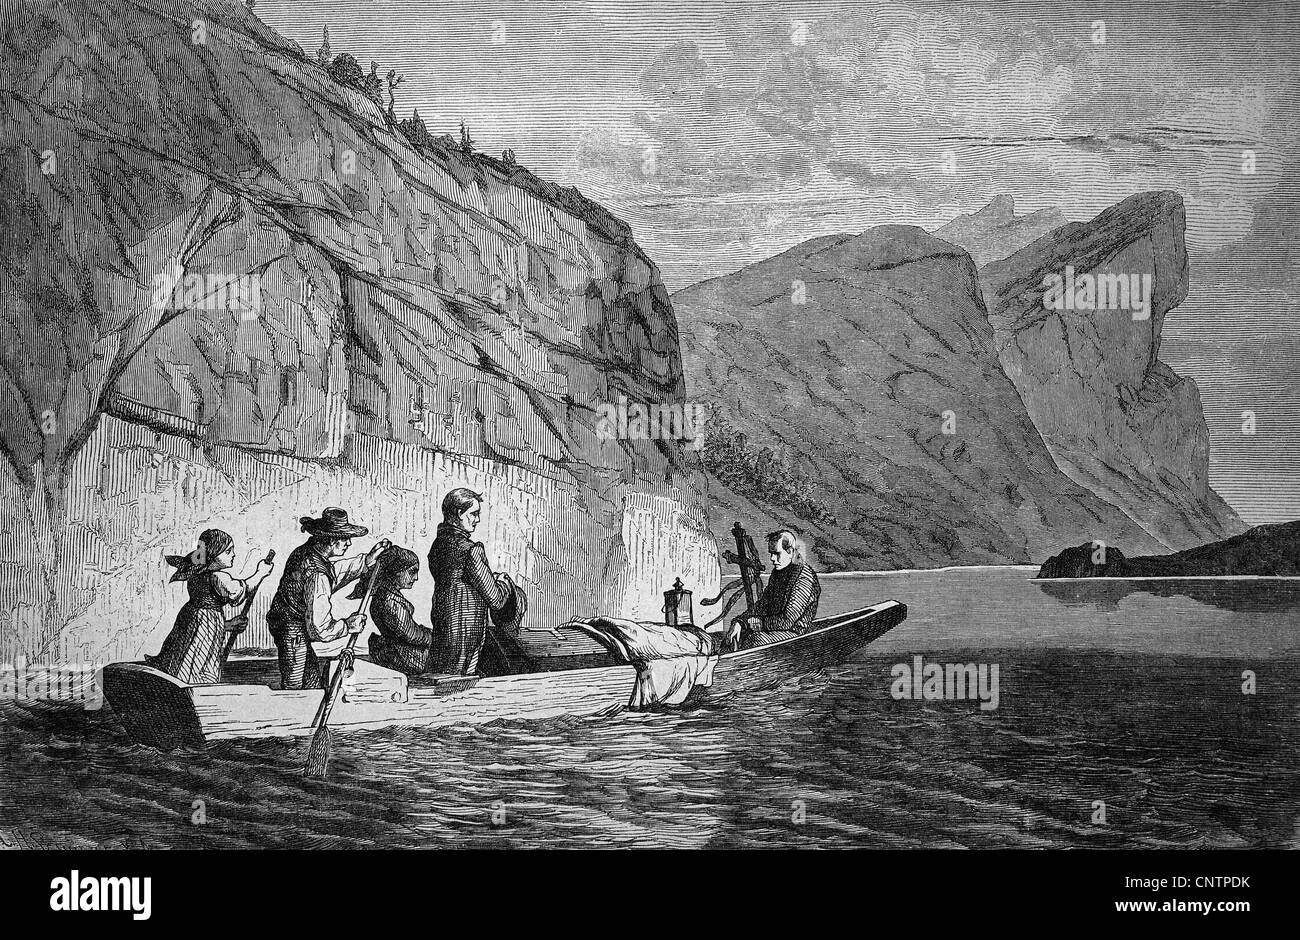 Ride grave sur un lac dans la région de Haute-Autriche, historique gravure sur bois, vers 1870 Banque D'Images